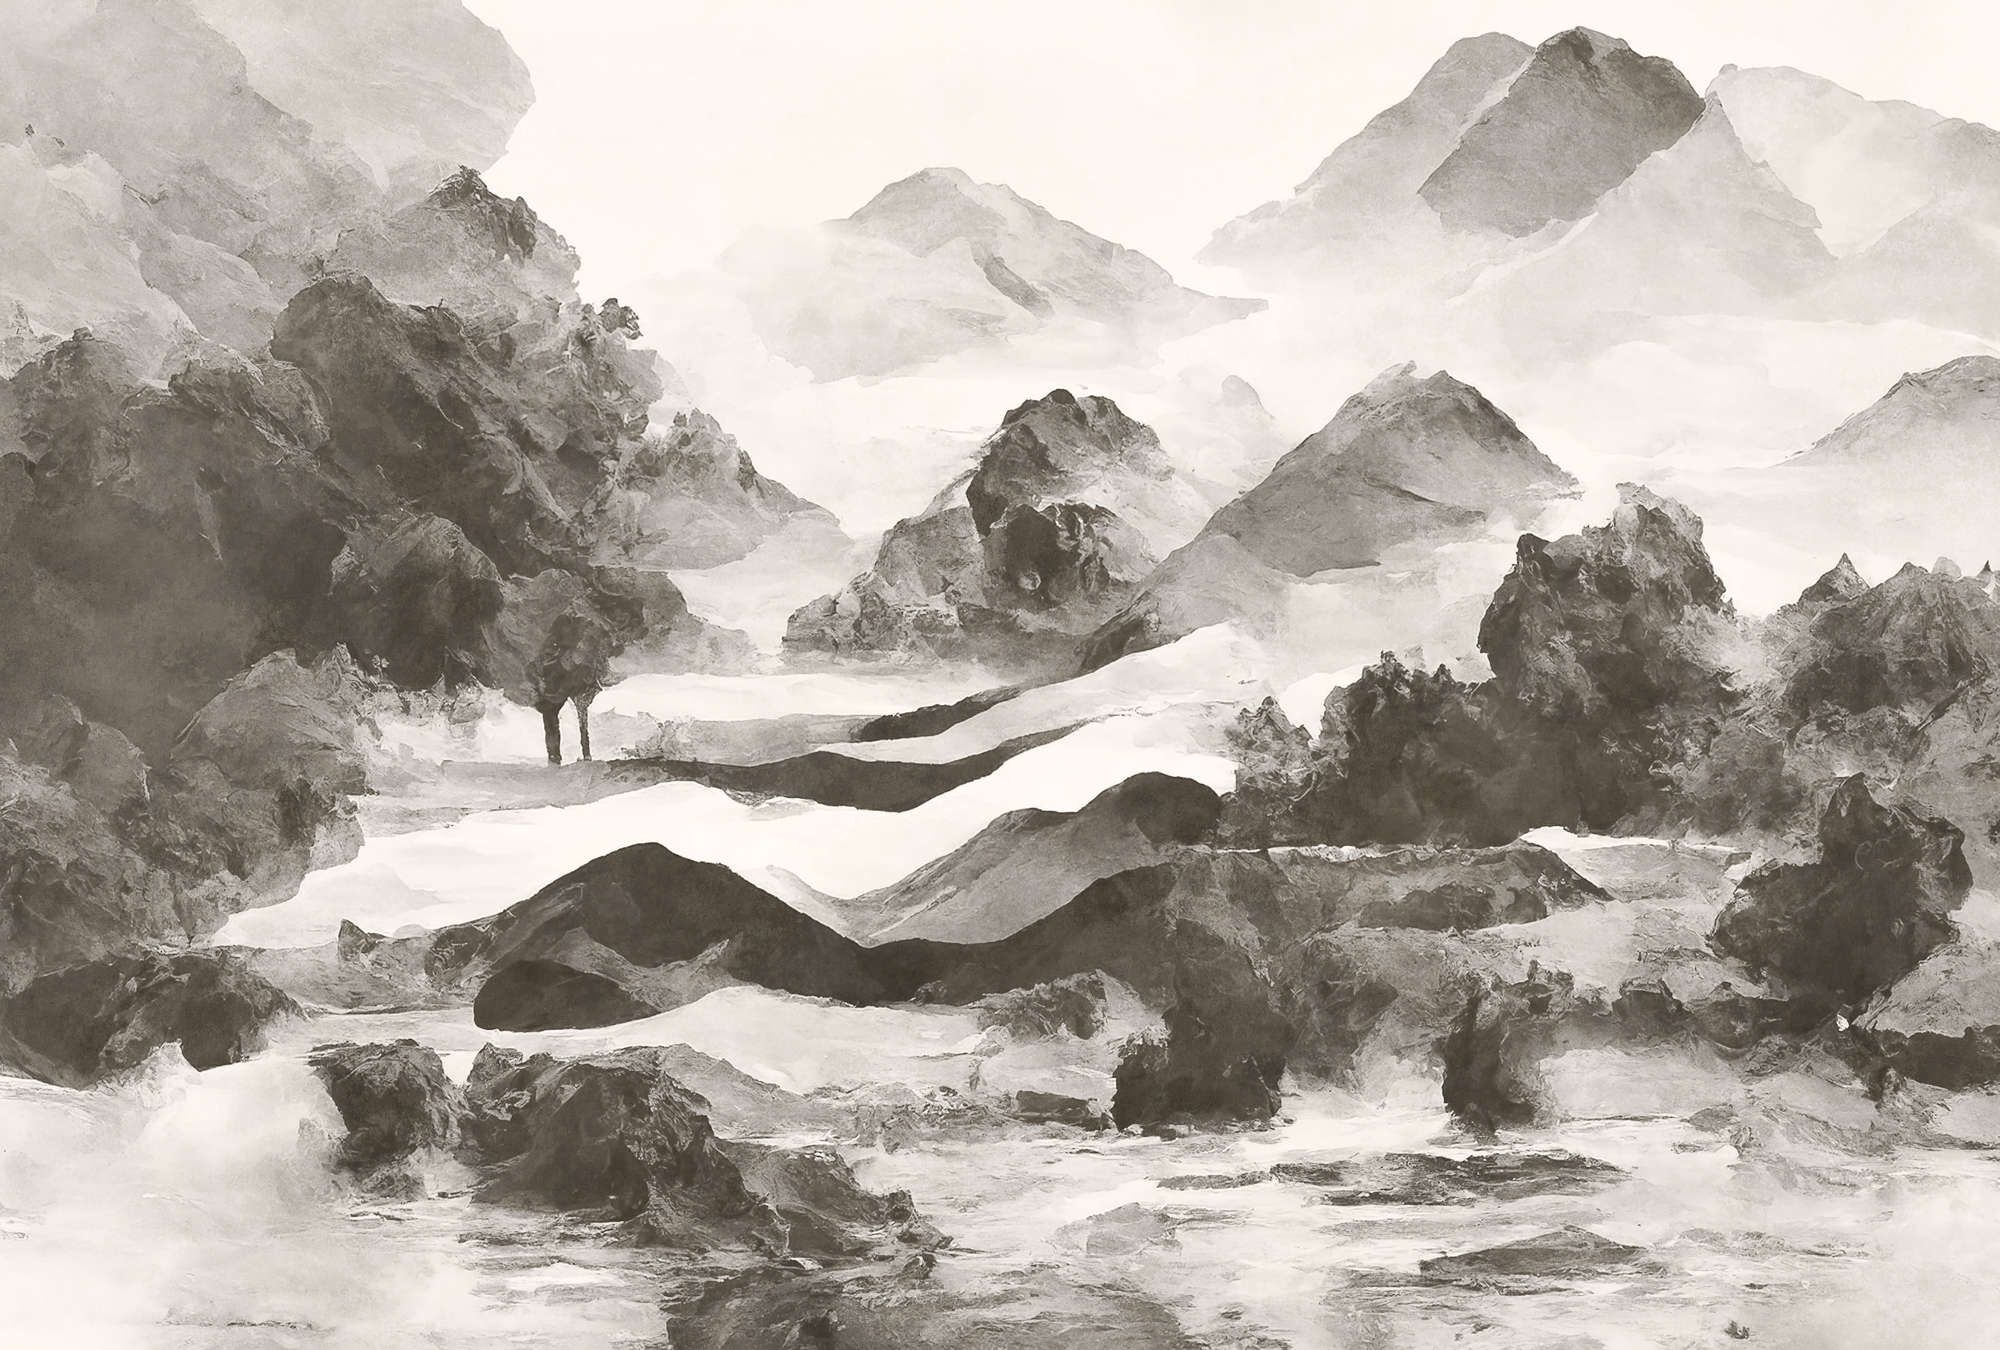             Fotomural »tinterra 1« - Paisaje con montañas y niebla - Gris | Tela sin tejer lisa, ligeramente nacarada y brillante
        